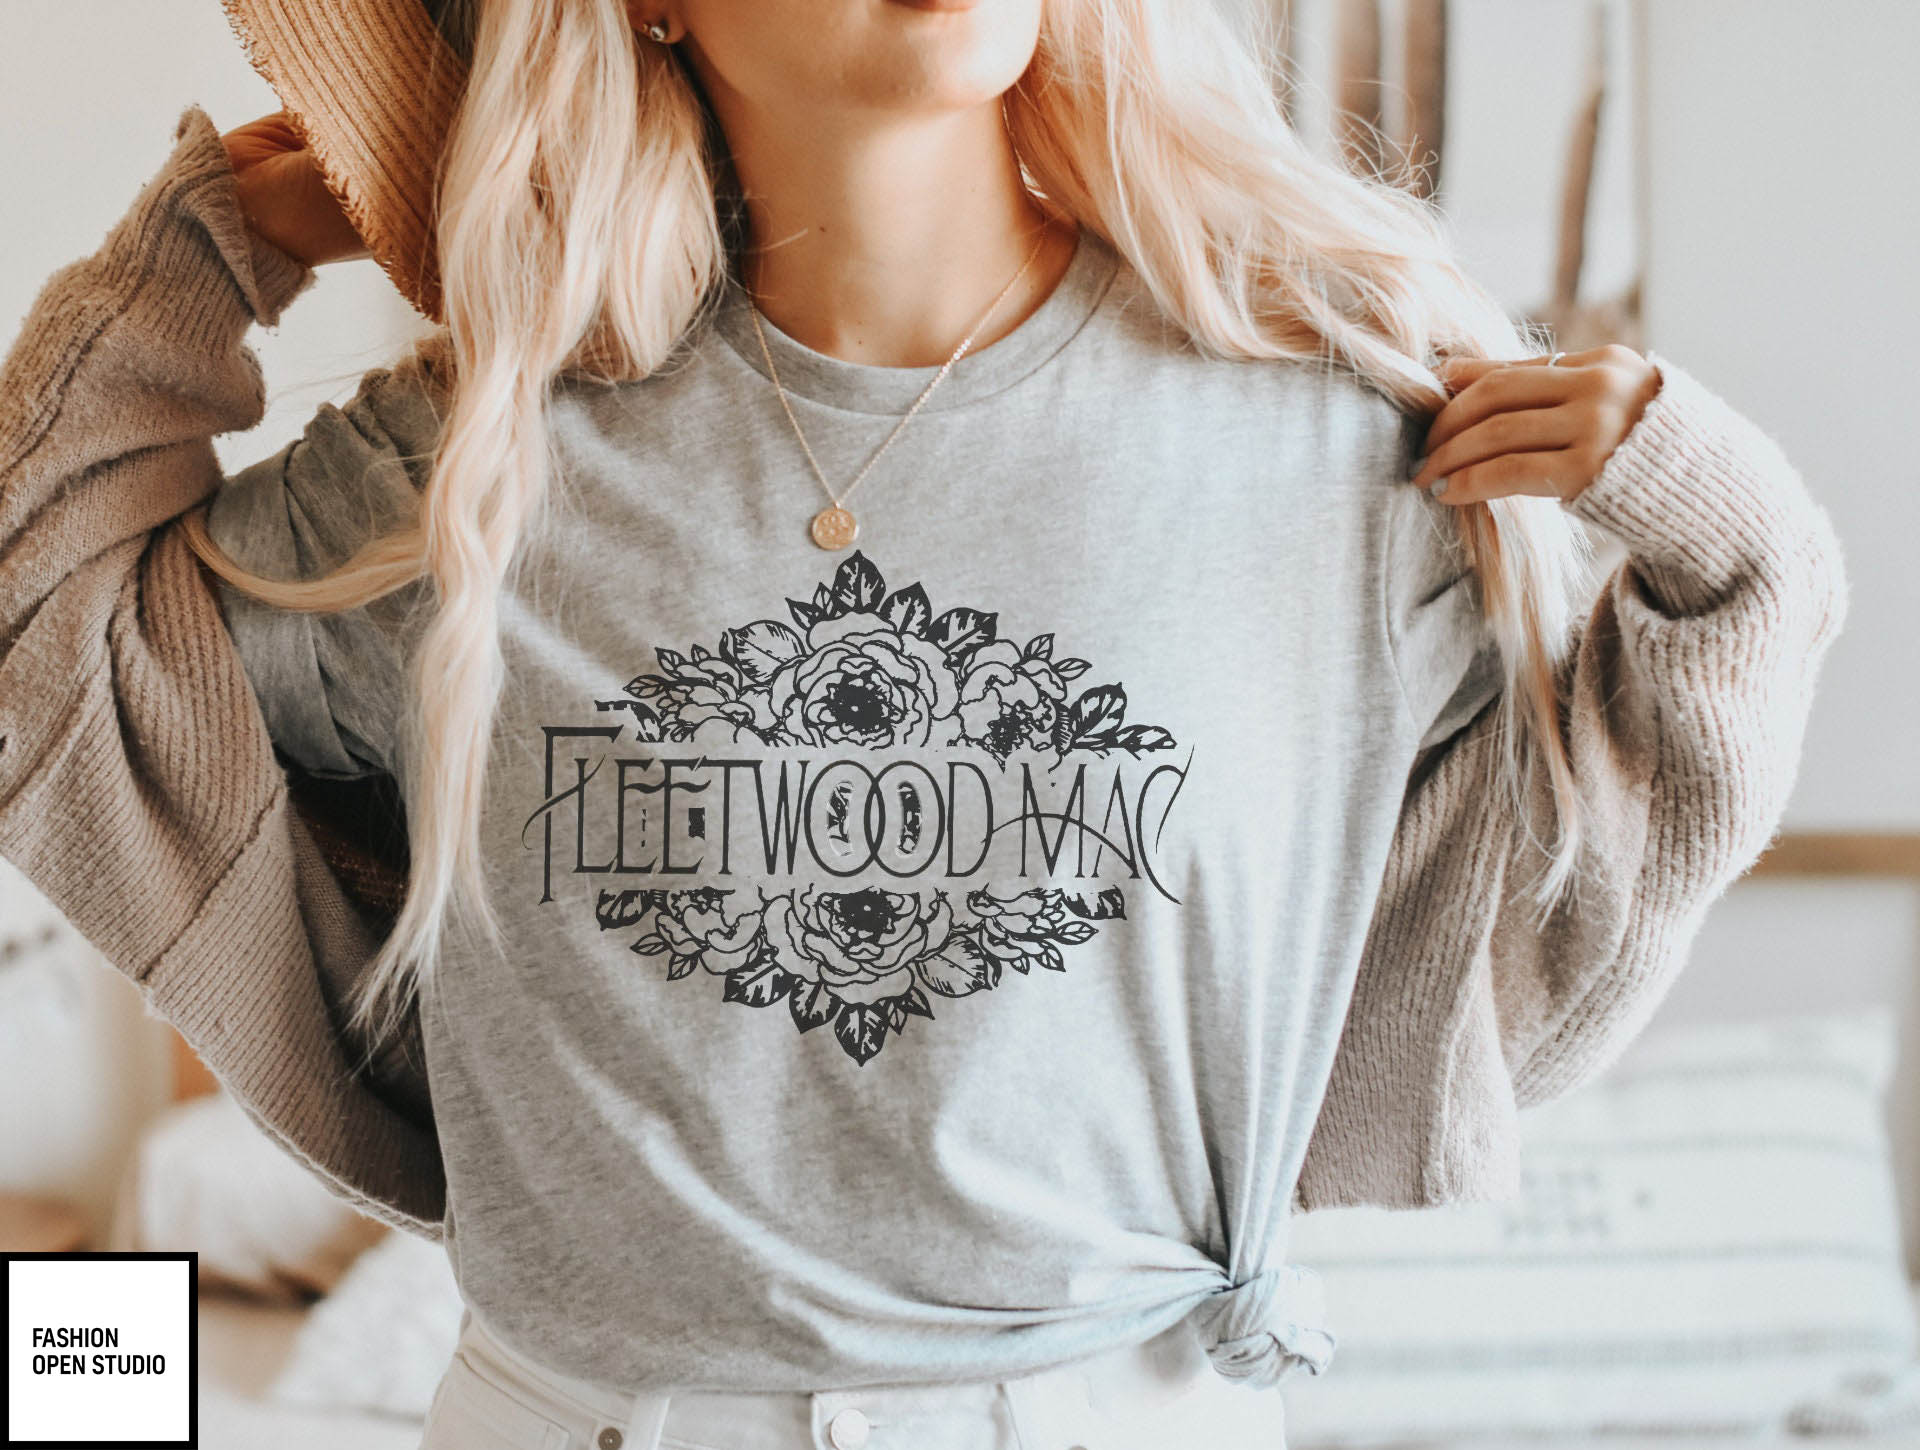 Fleetwood Mac T-Shirt 70s Rock Fan Stevie Nicks T-Shirt